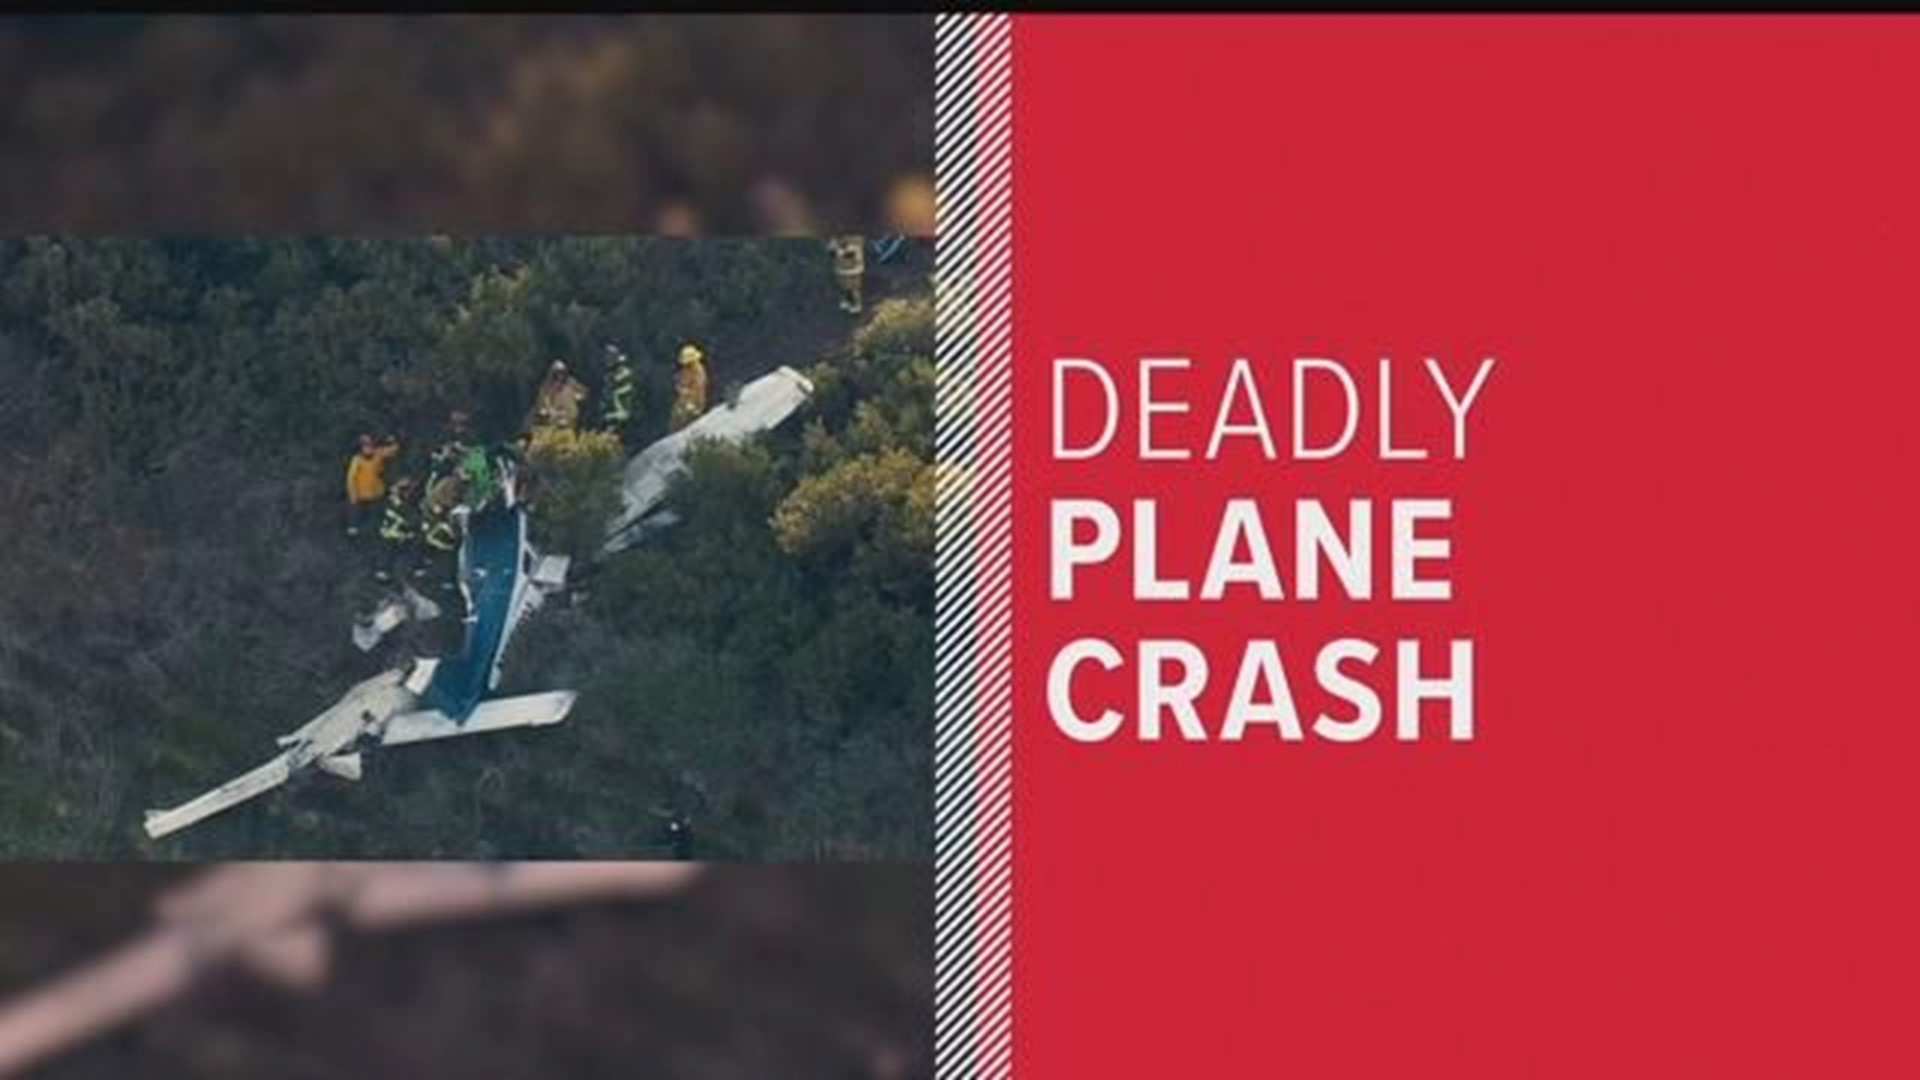 Small plane crashes in Oceanside killing pilot, injuring passenger